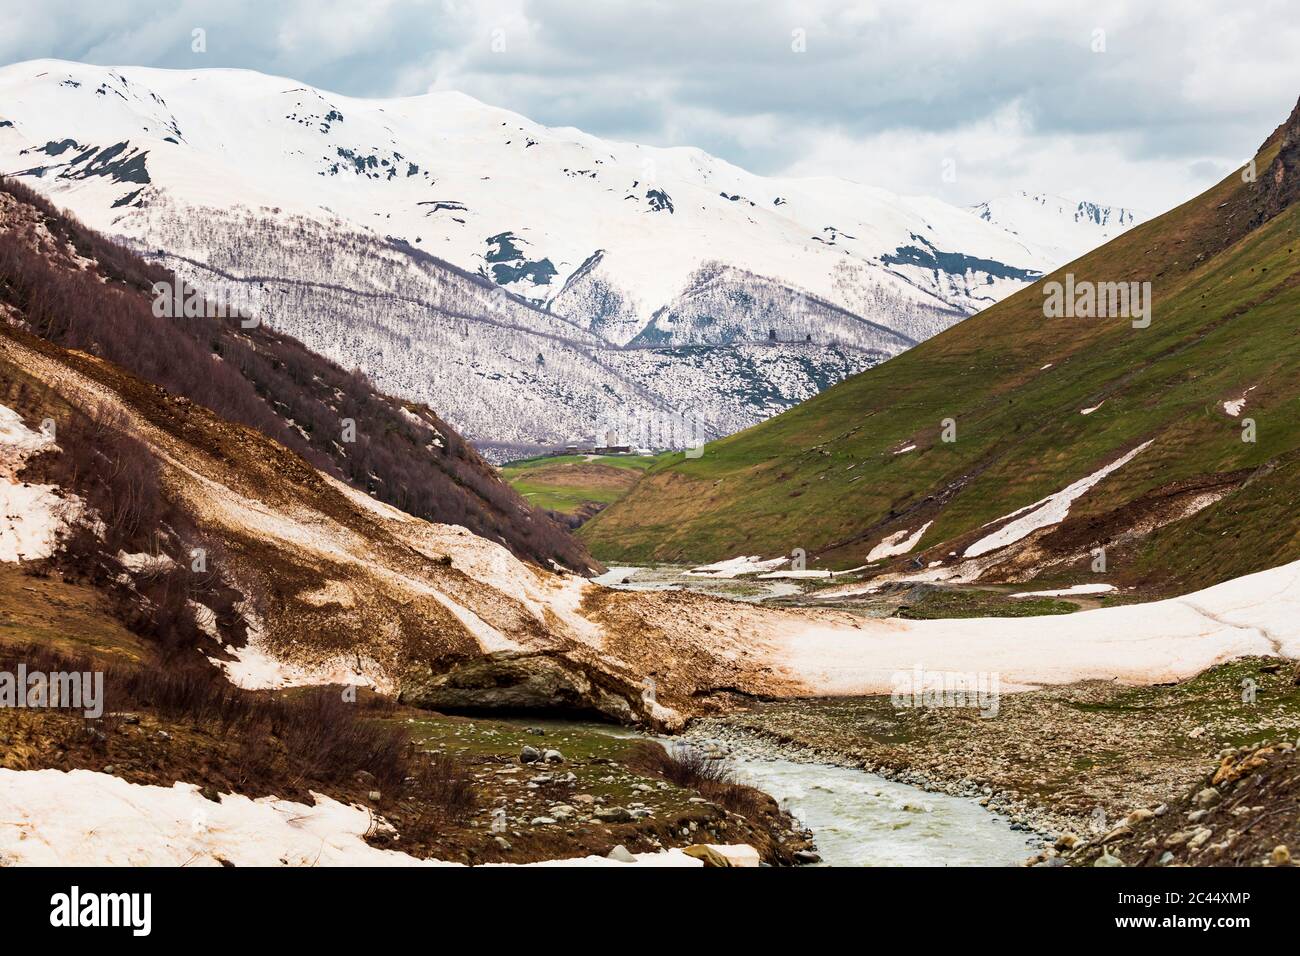 Georgia, Svaneti, Ushguli, Valley in Central Caucasus mountains Stock Photo